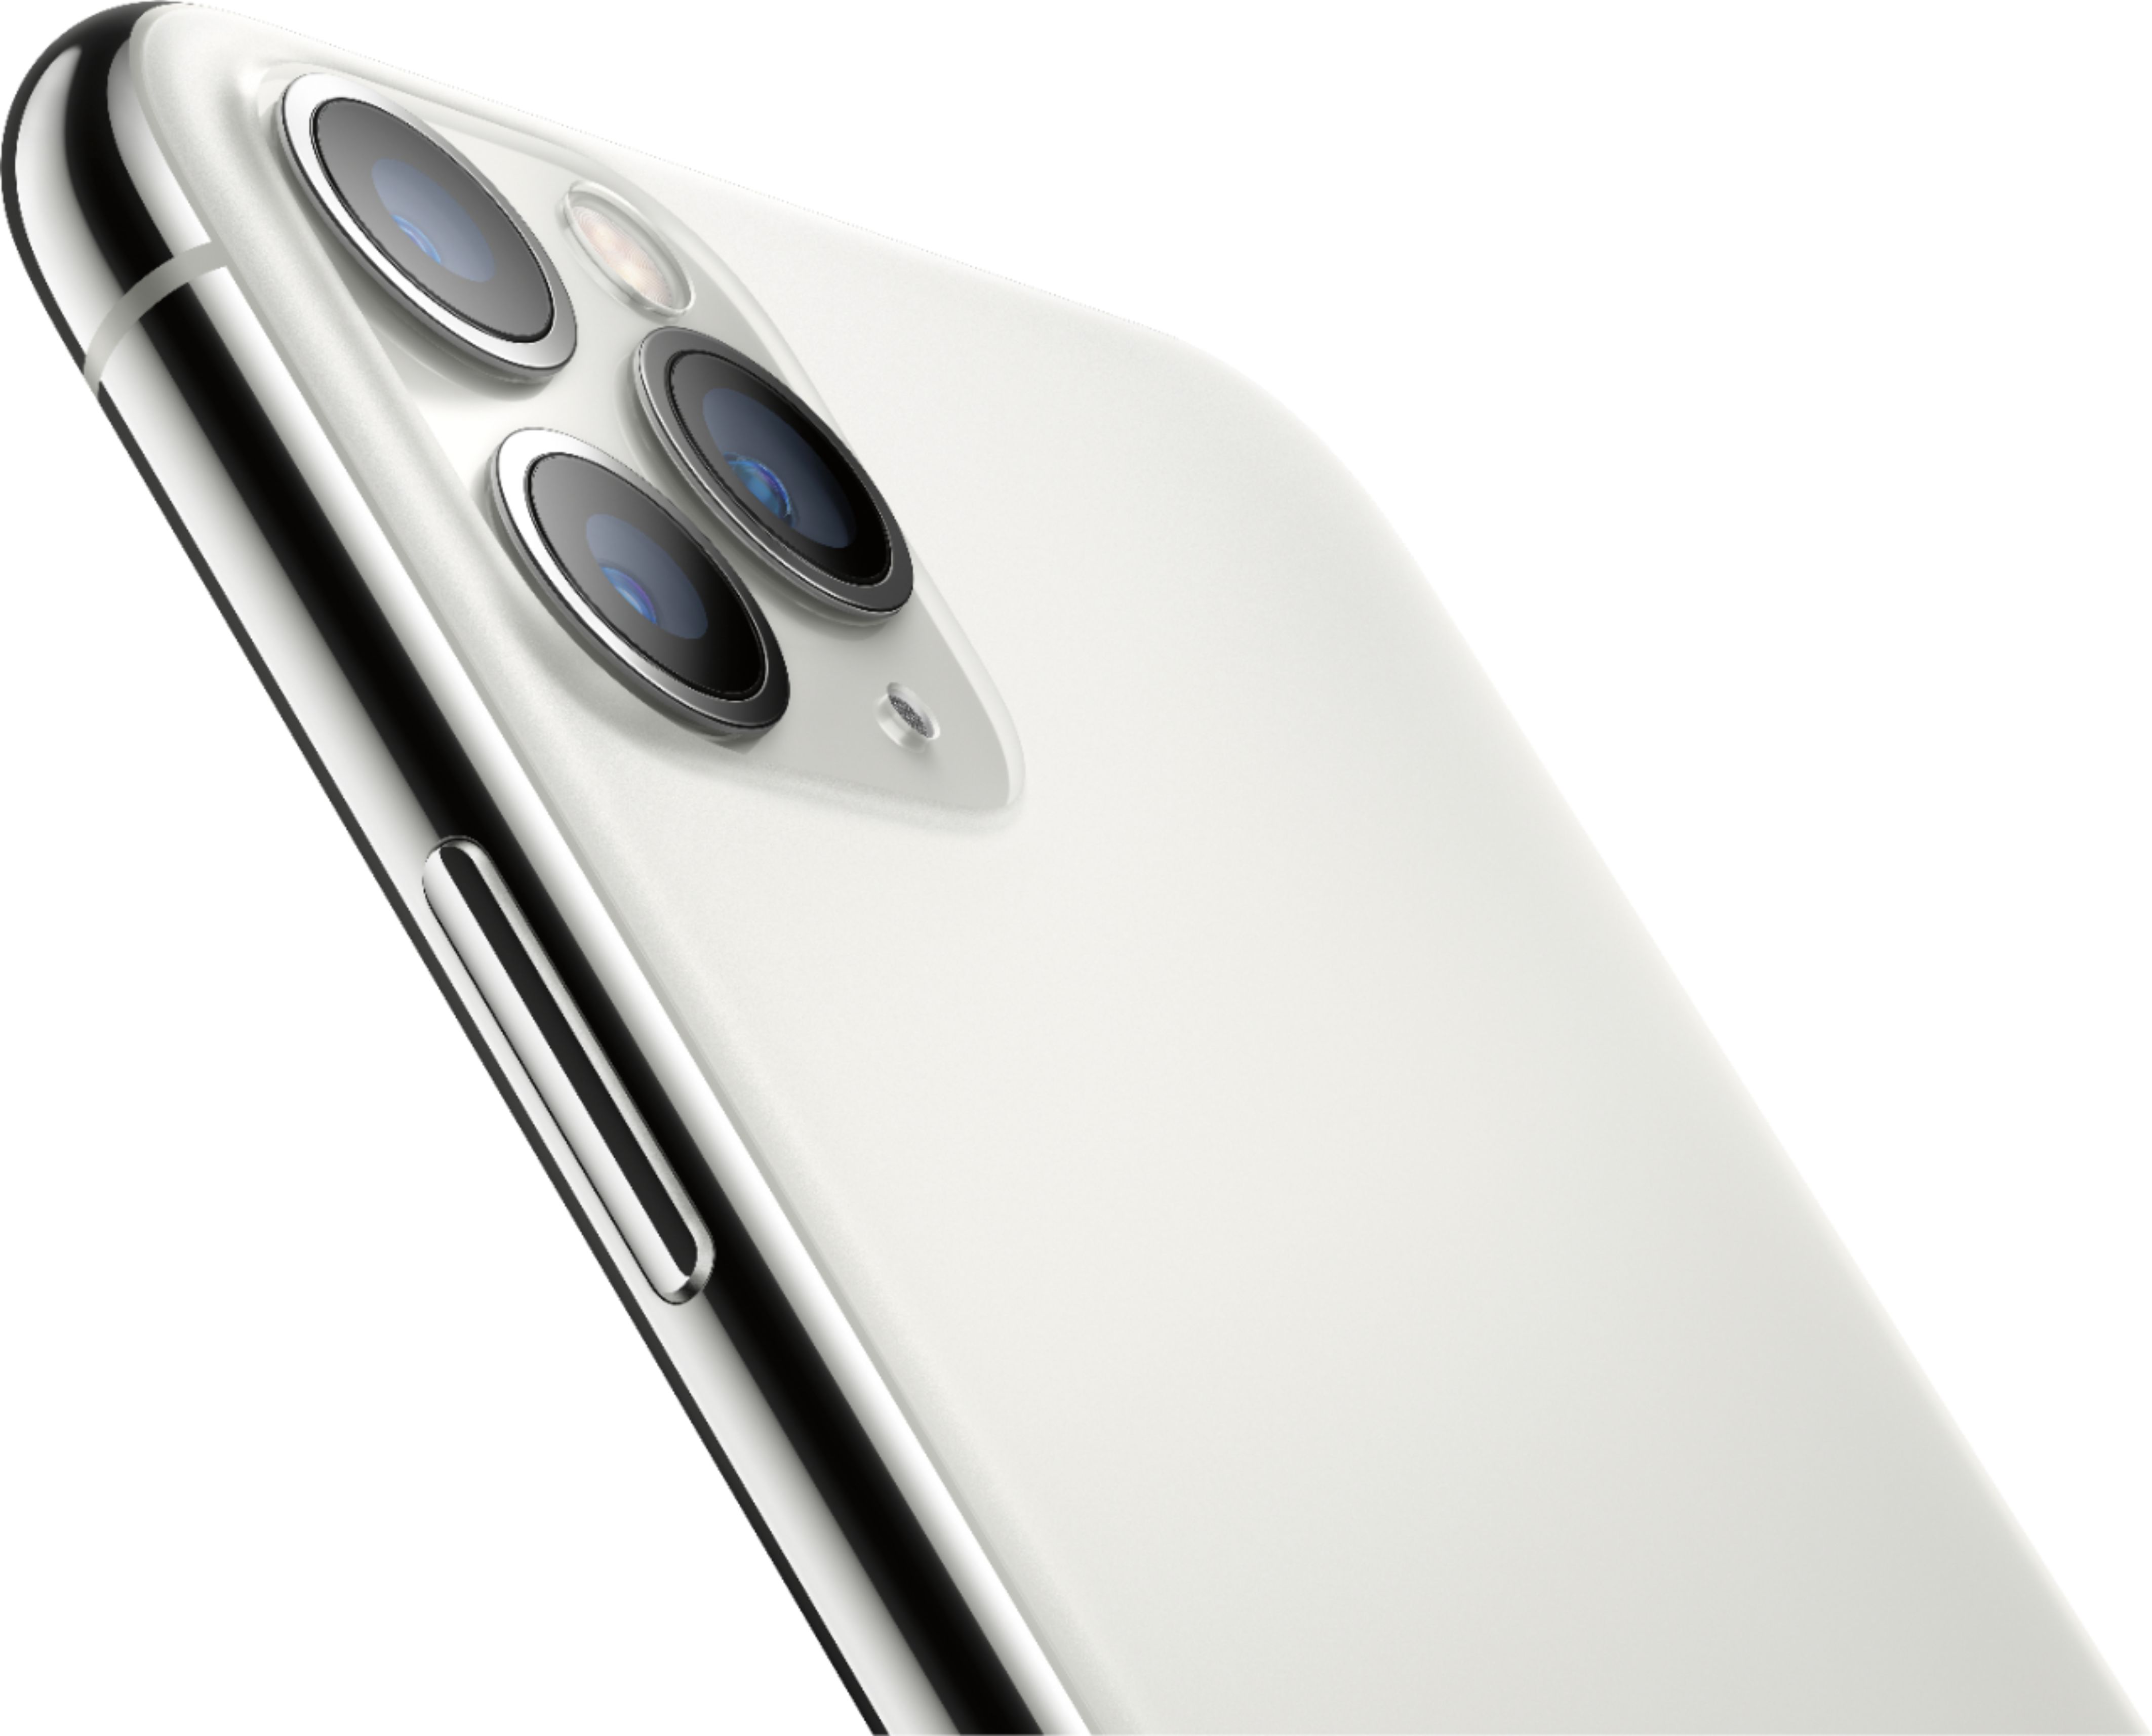 Apple Iphone 11 Pro Max 512gb Silver Unlocked Mwgq2ll A Best Buy